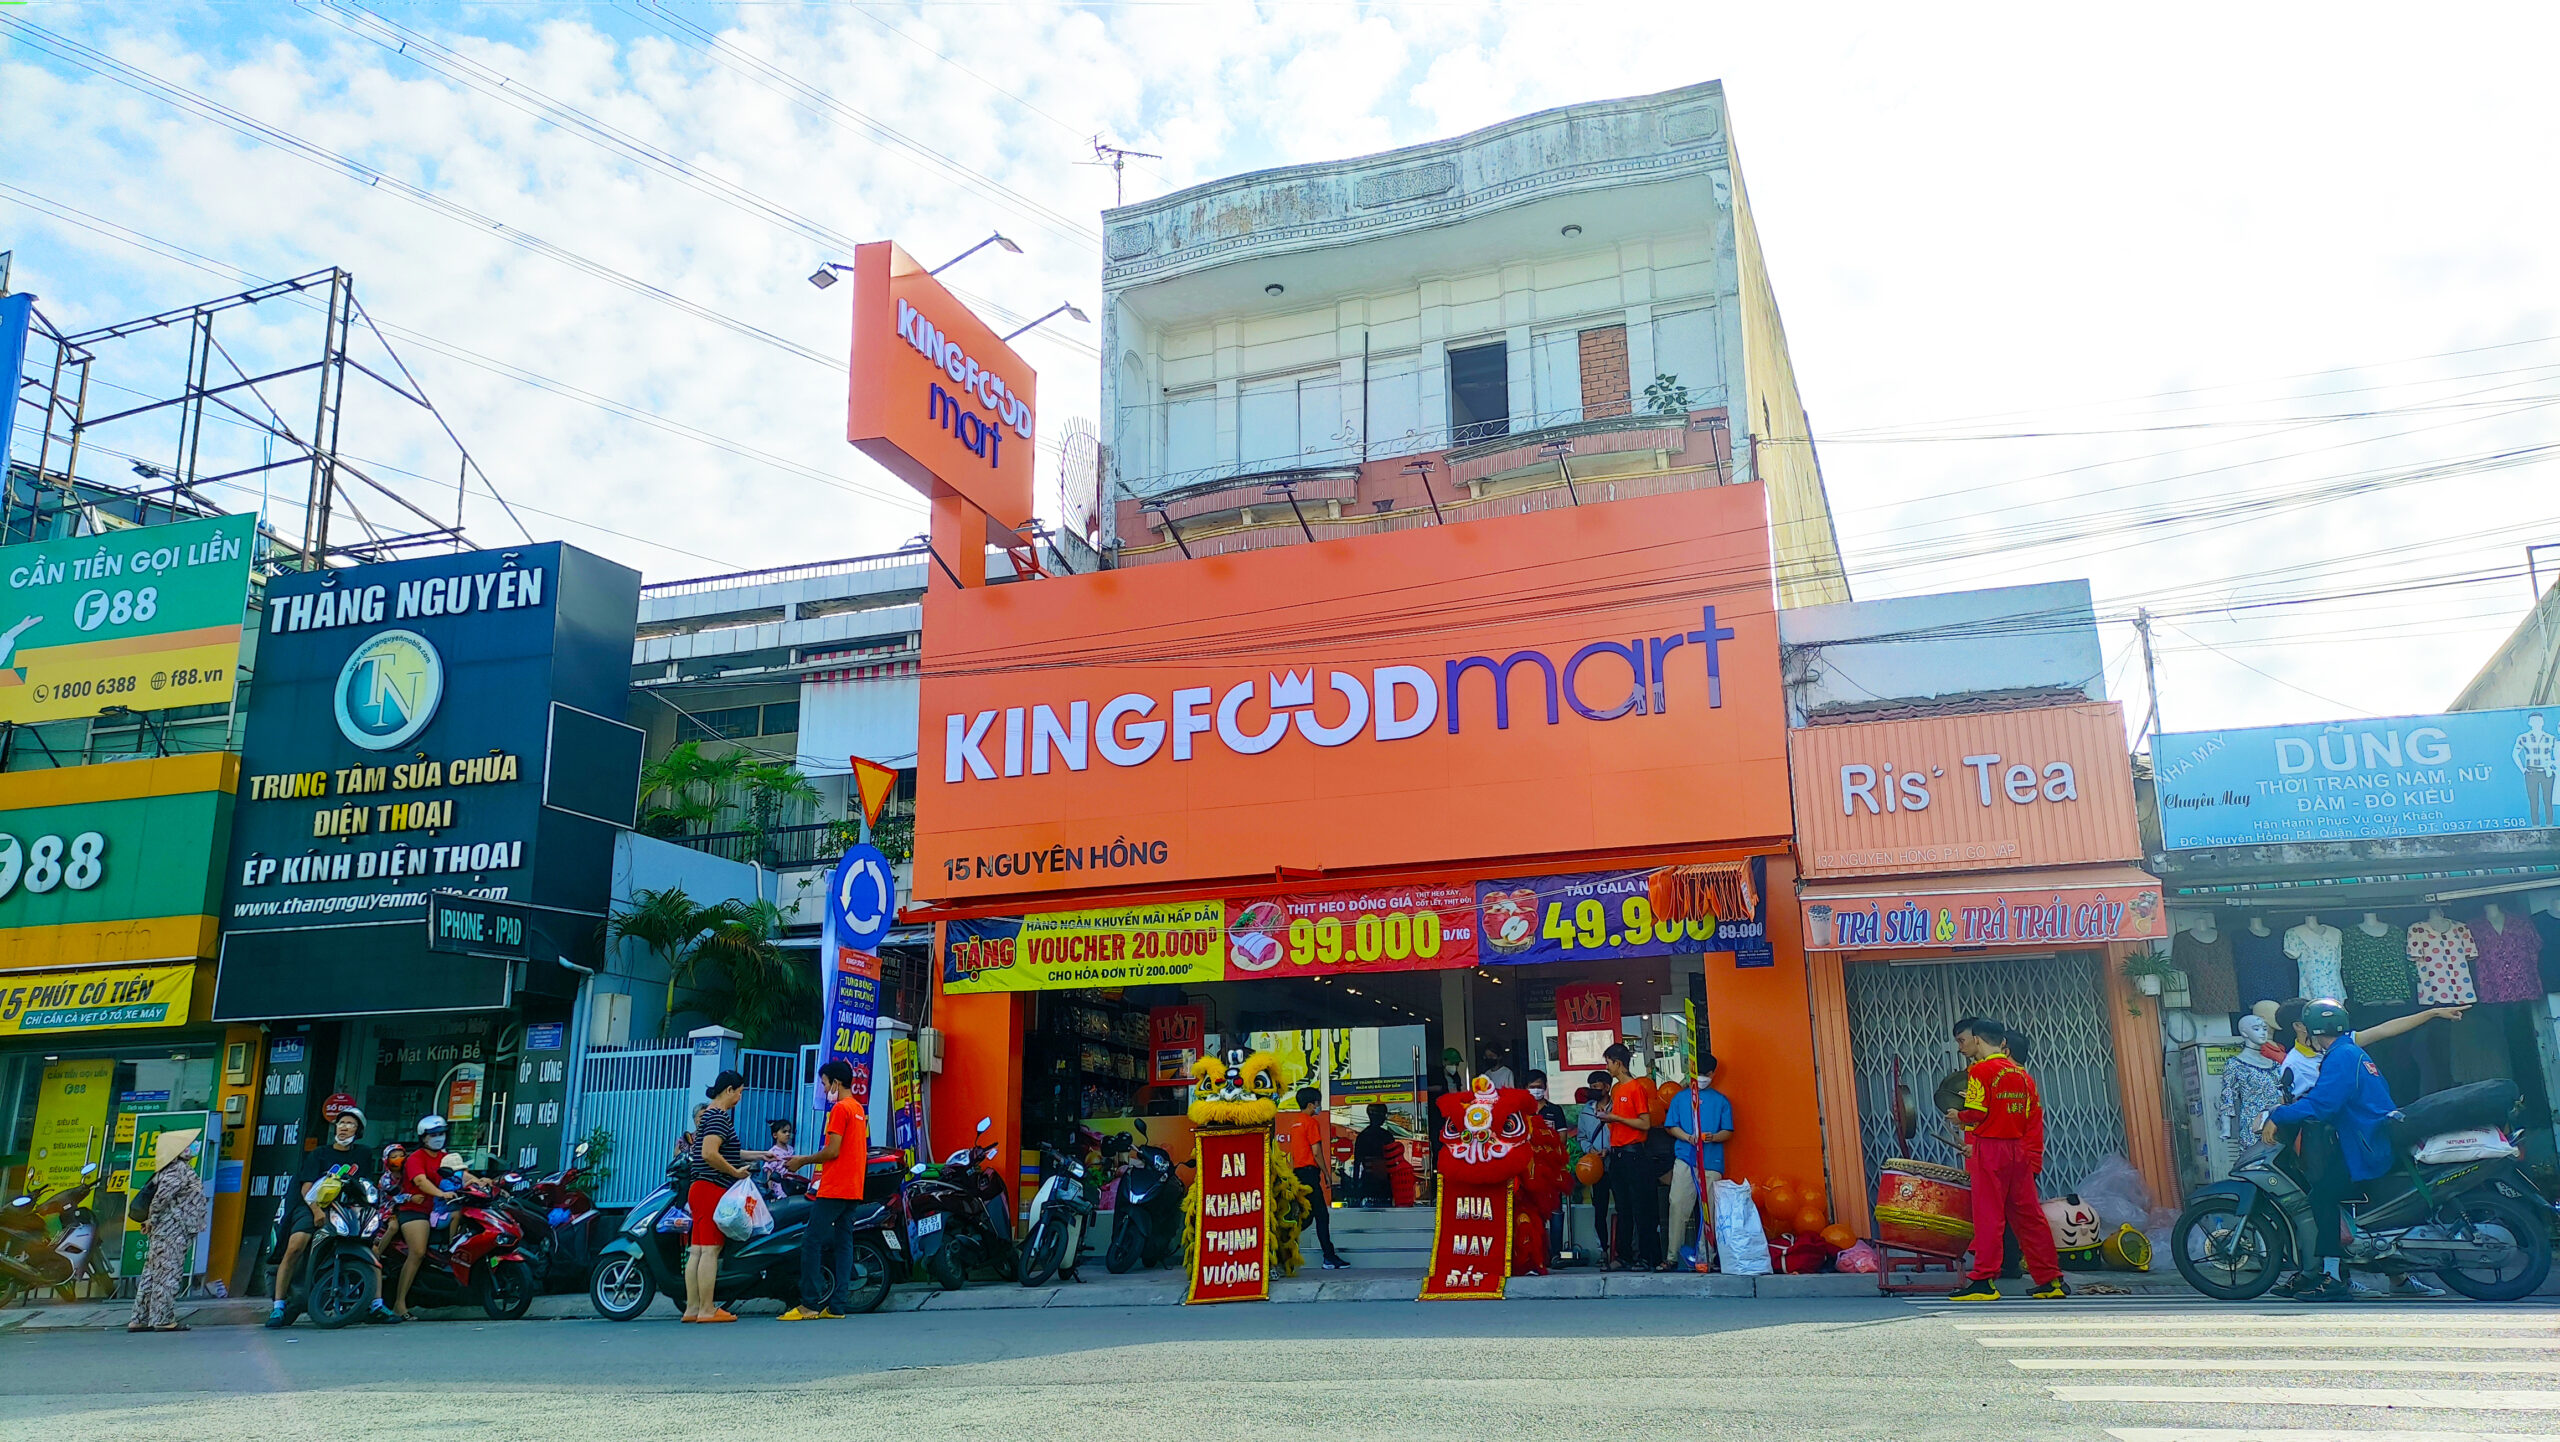 Kingfoodmart Nguyên Hồng, Quận Gò Vấp